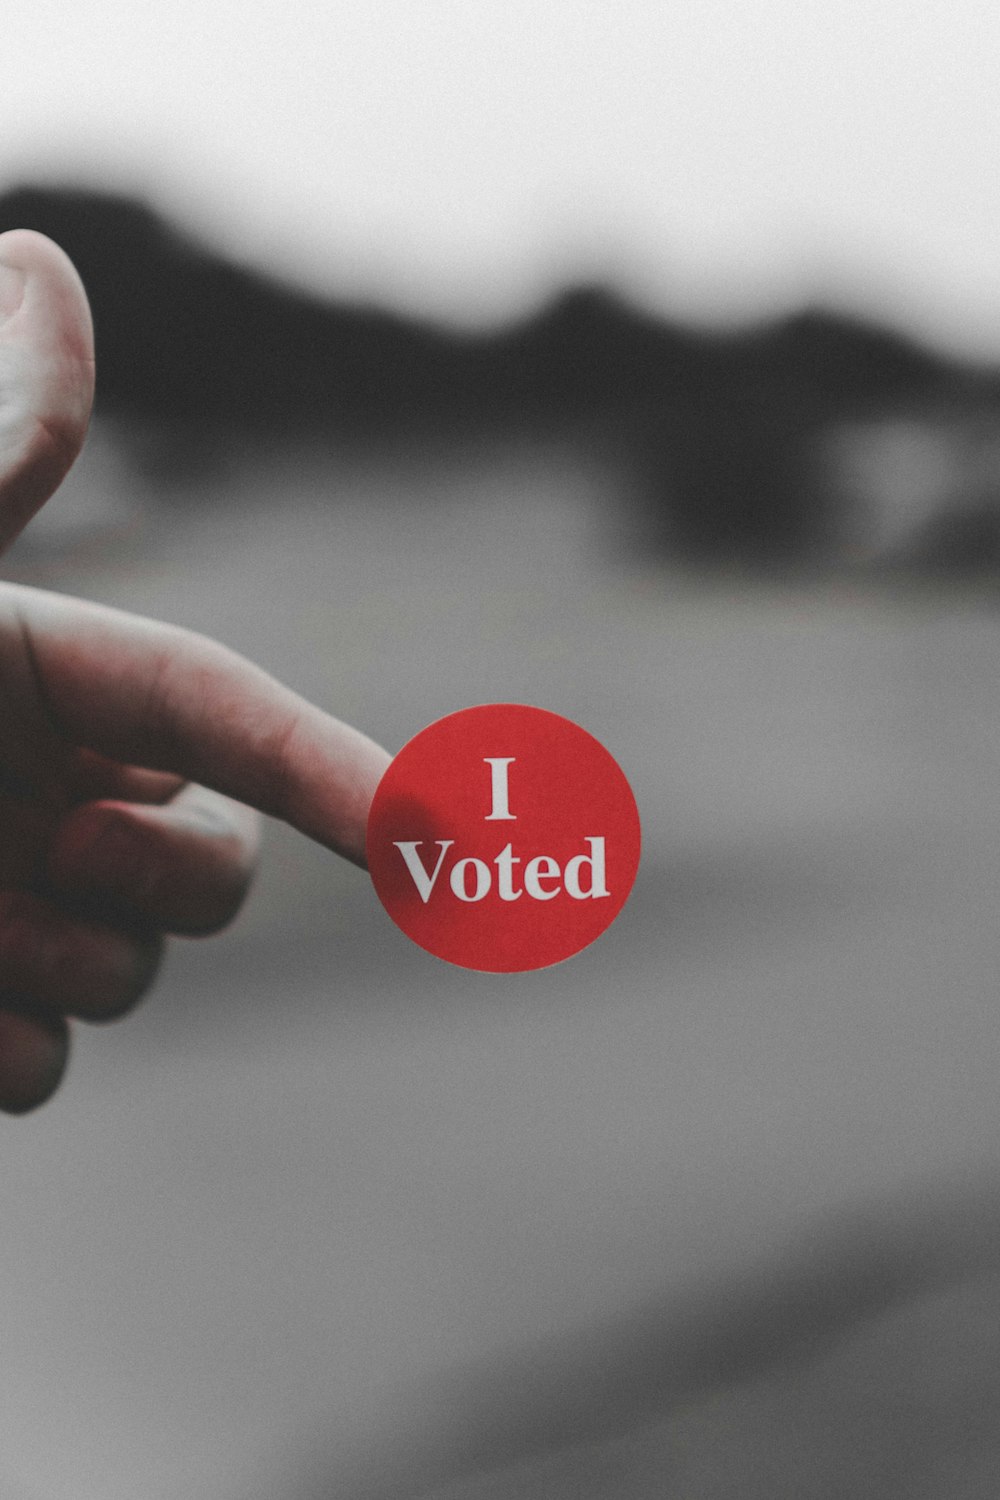 Una mano sosteniendo un botón rojo que dice voto